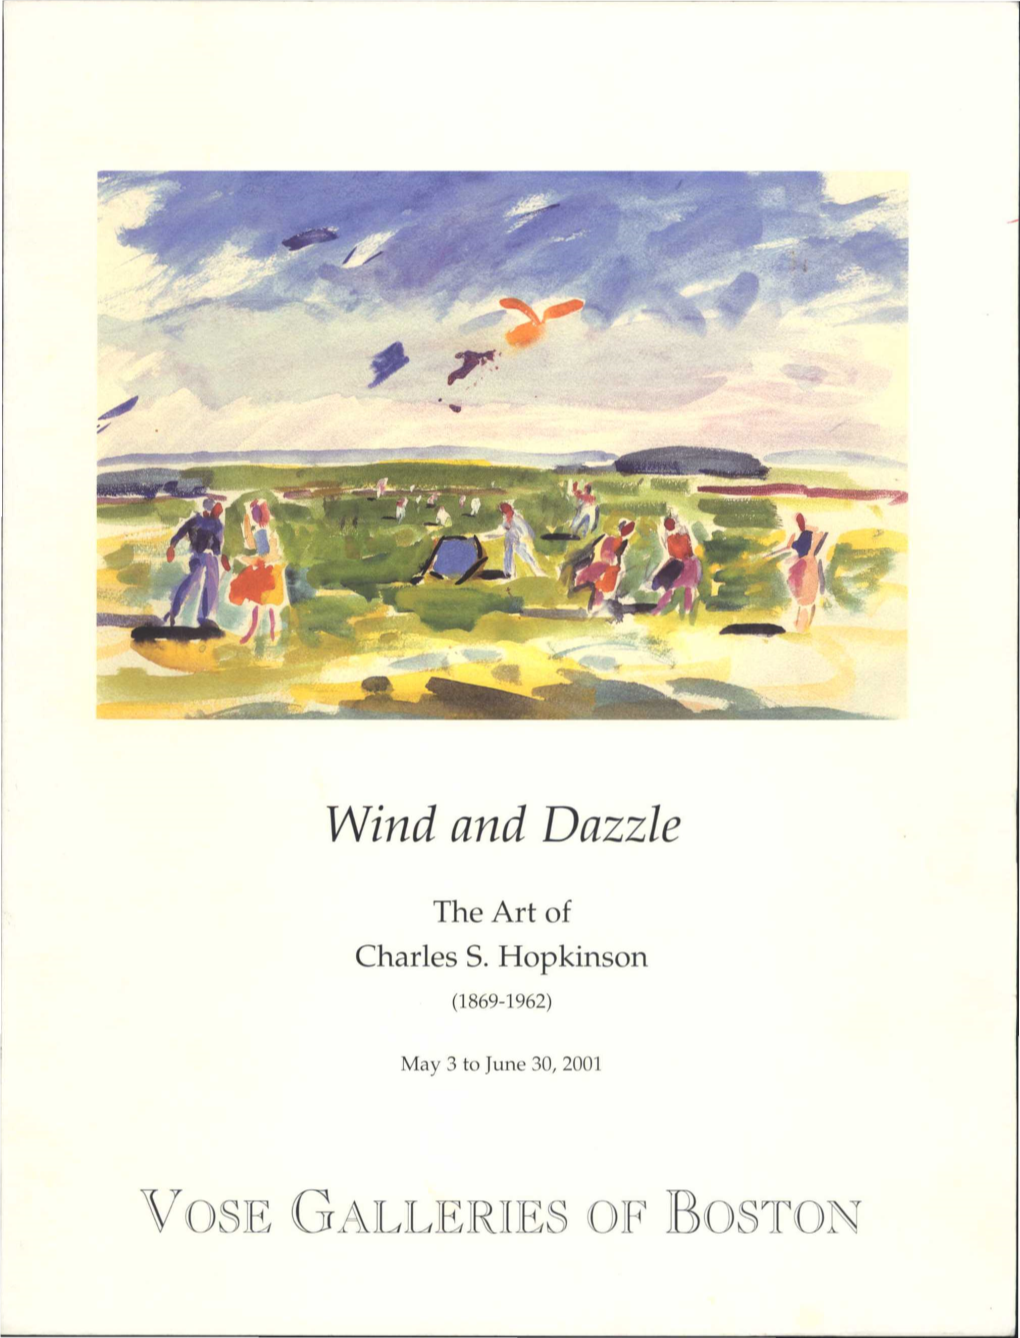 Wind and Dazzle